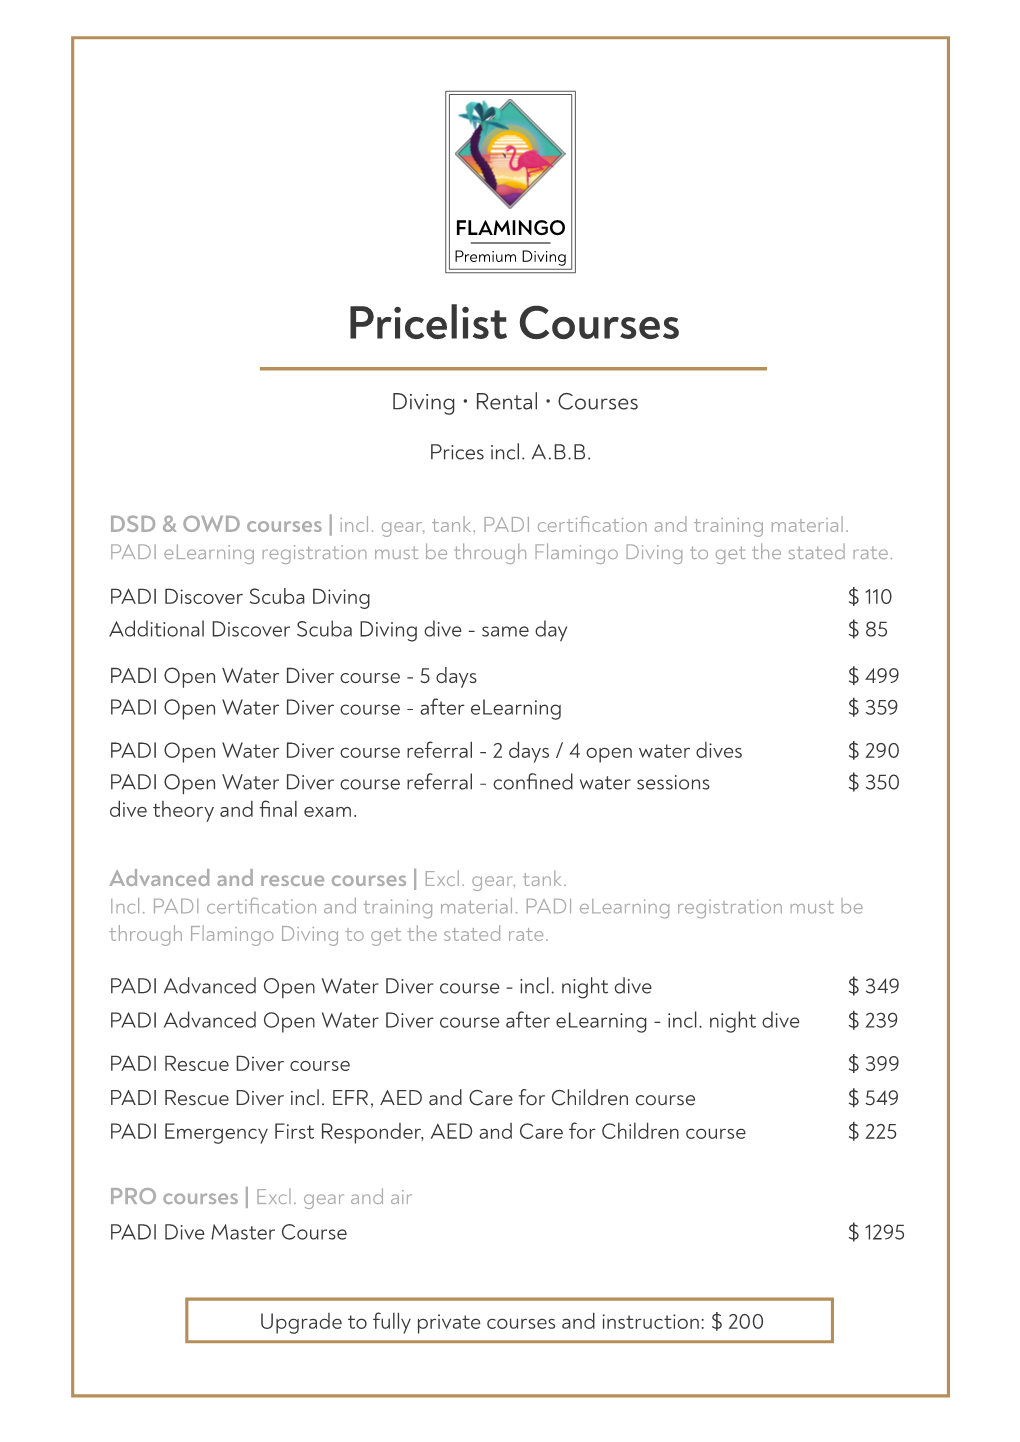 Pricelist Courses